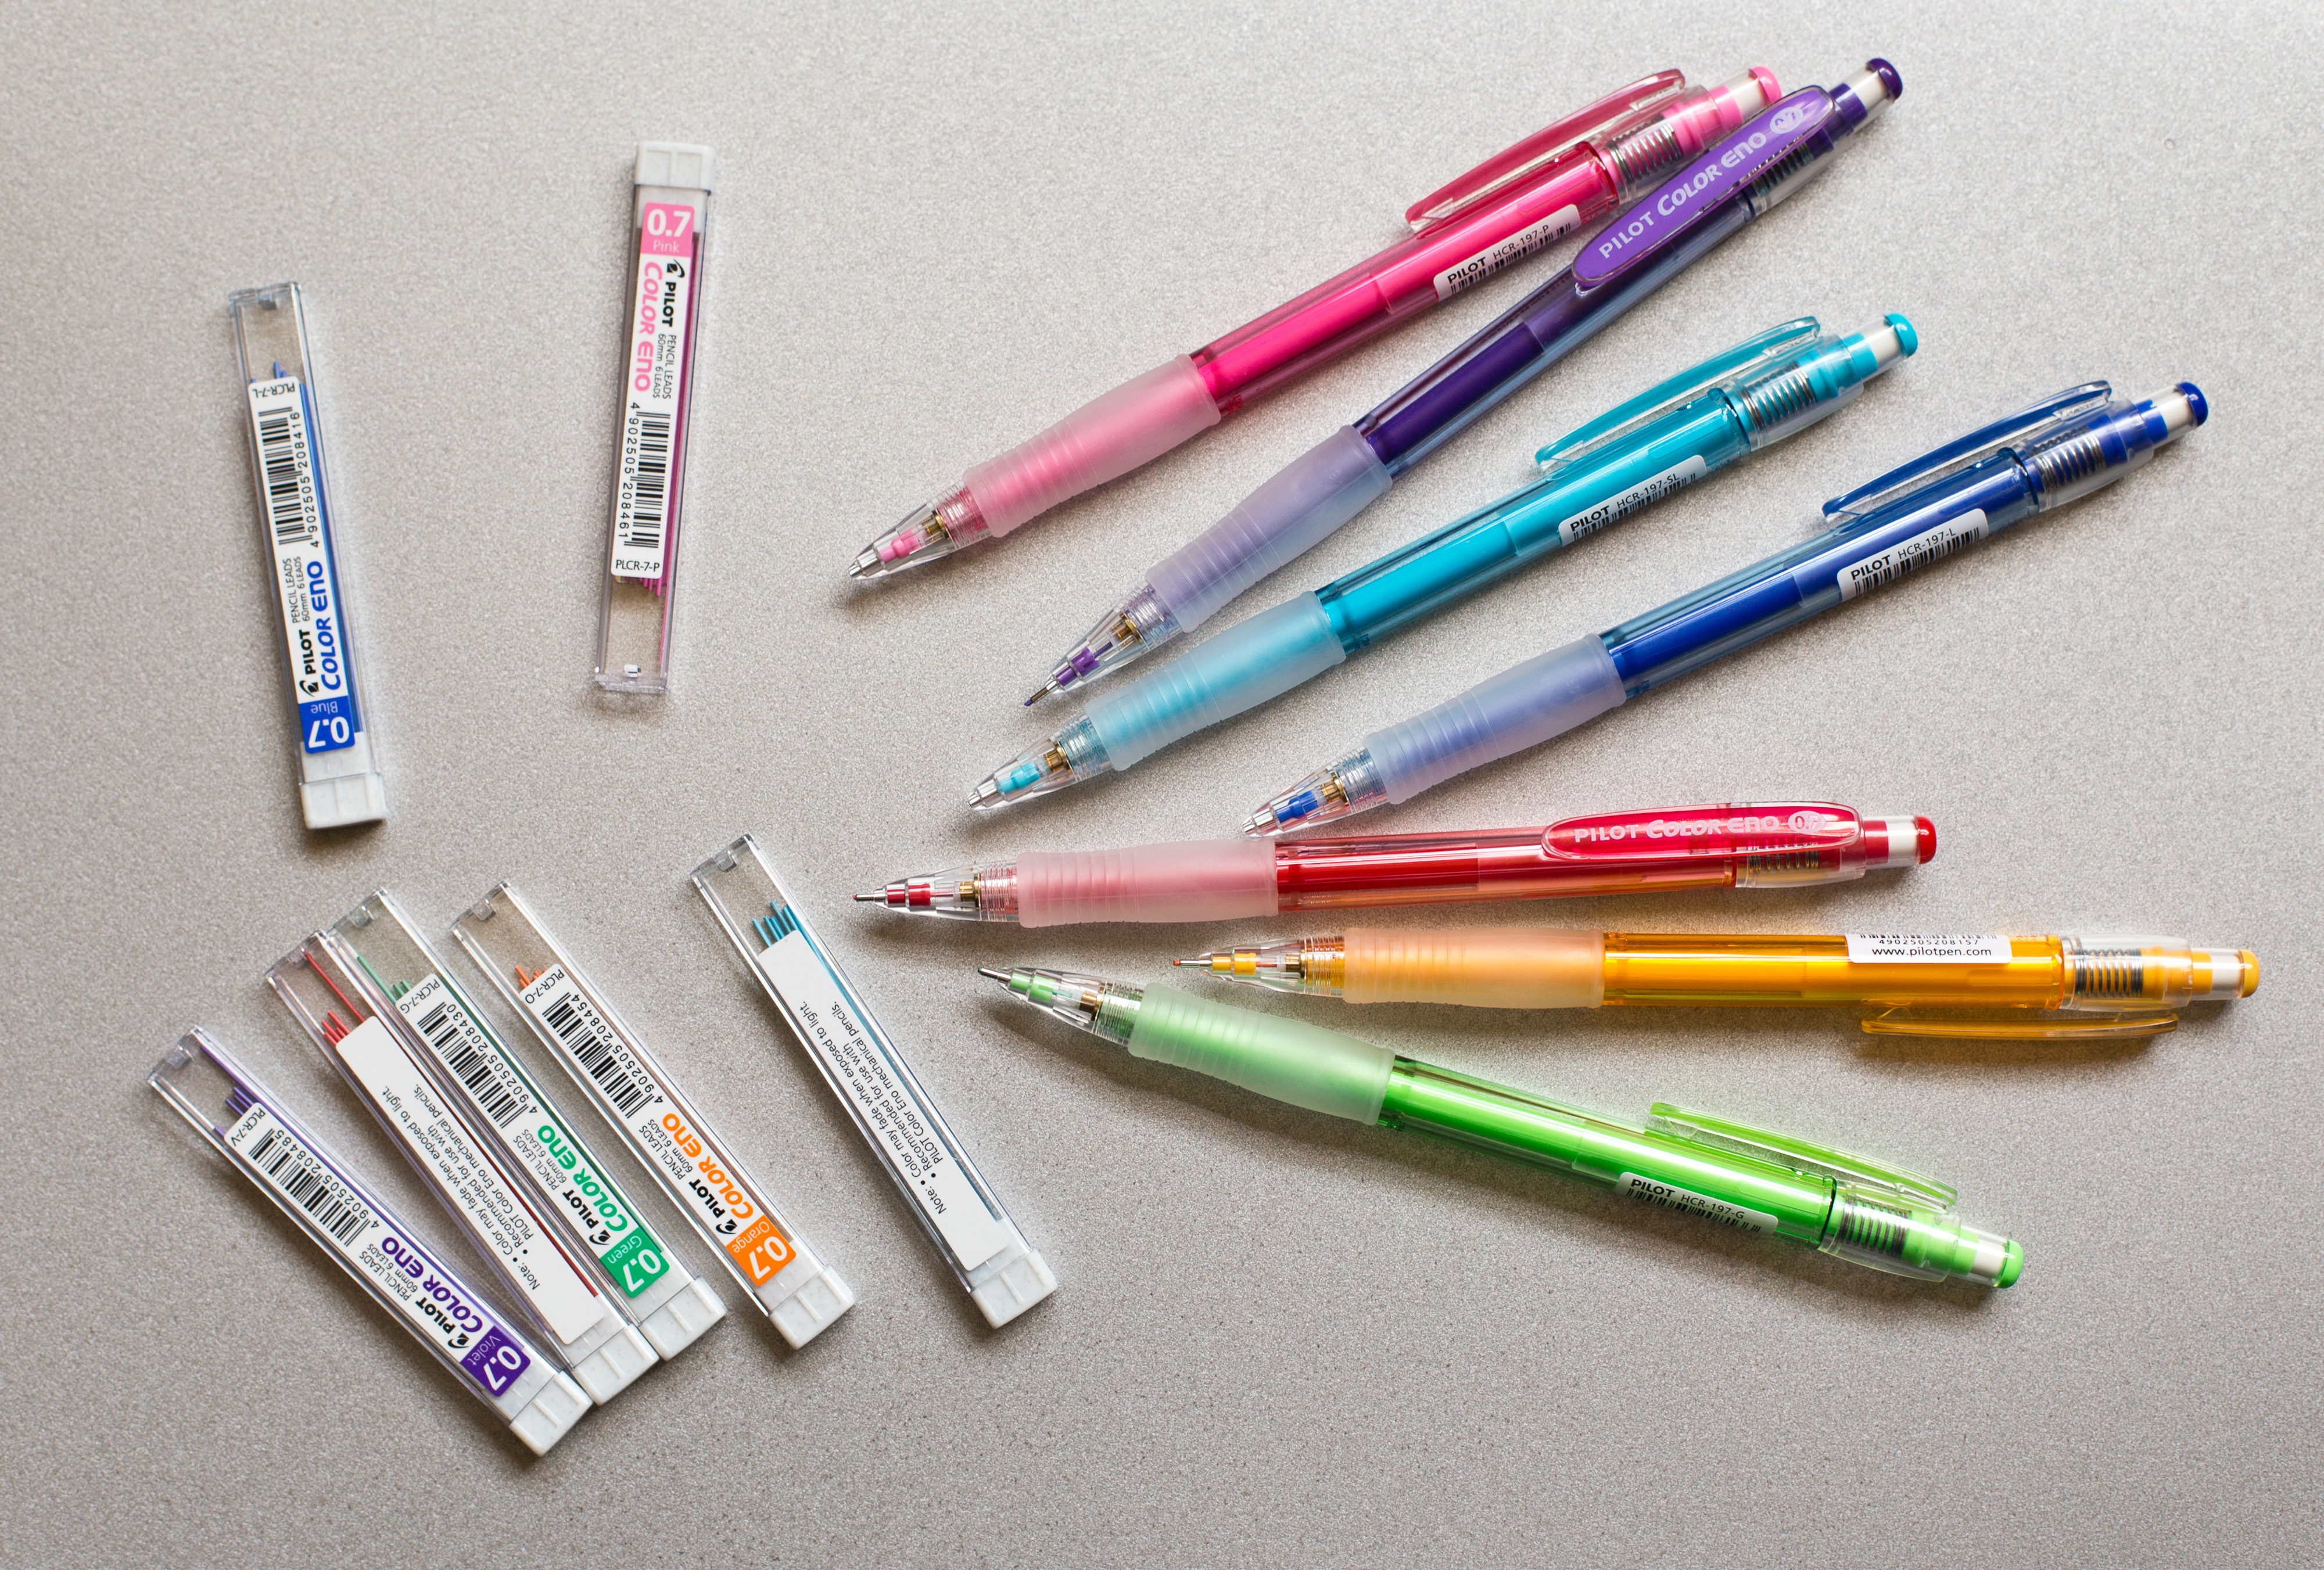 Pilot Neox Color Eno Pencil Color Lead 0.7mm Soft Blue